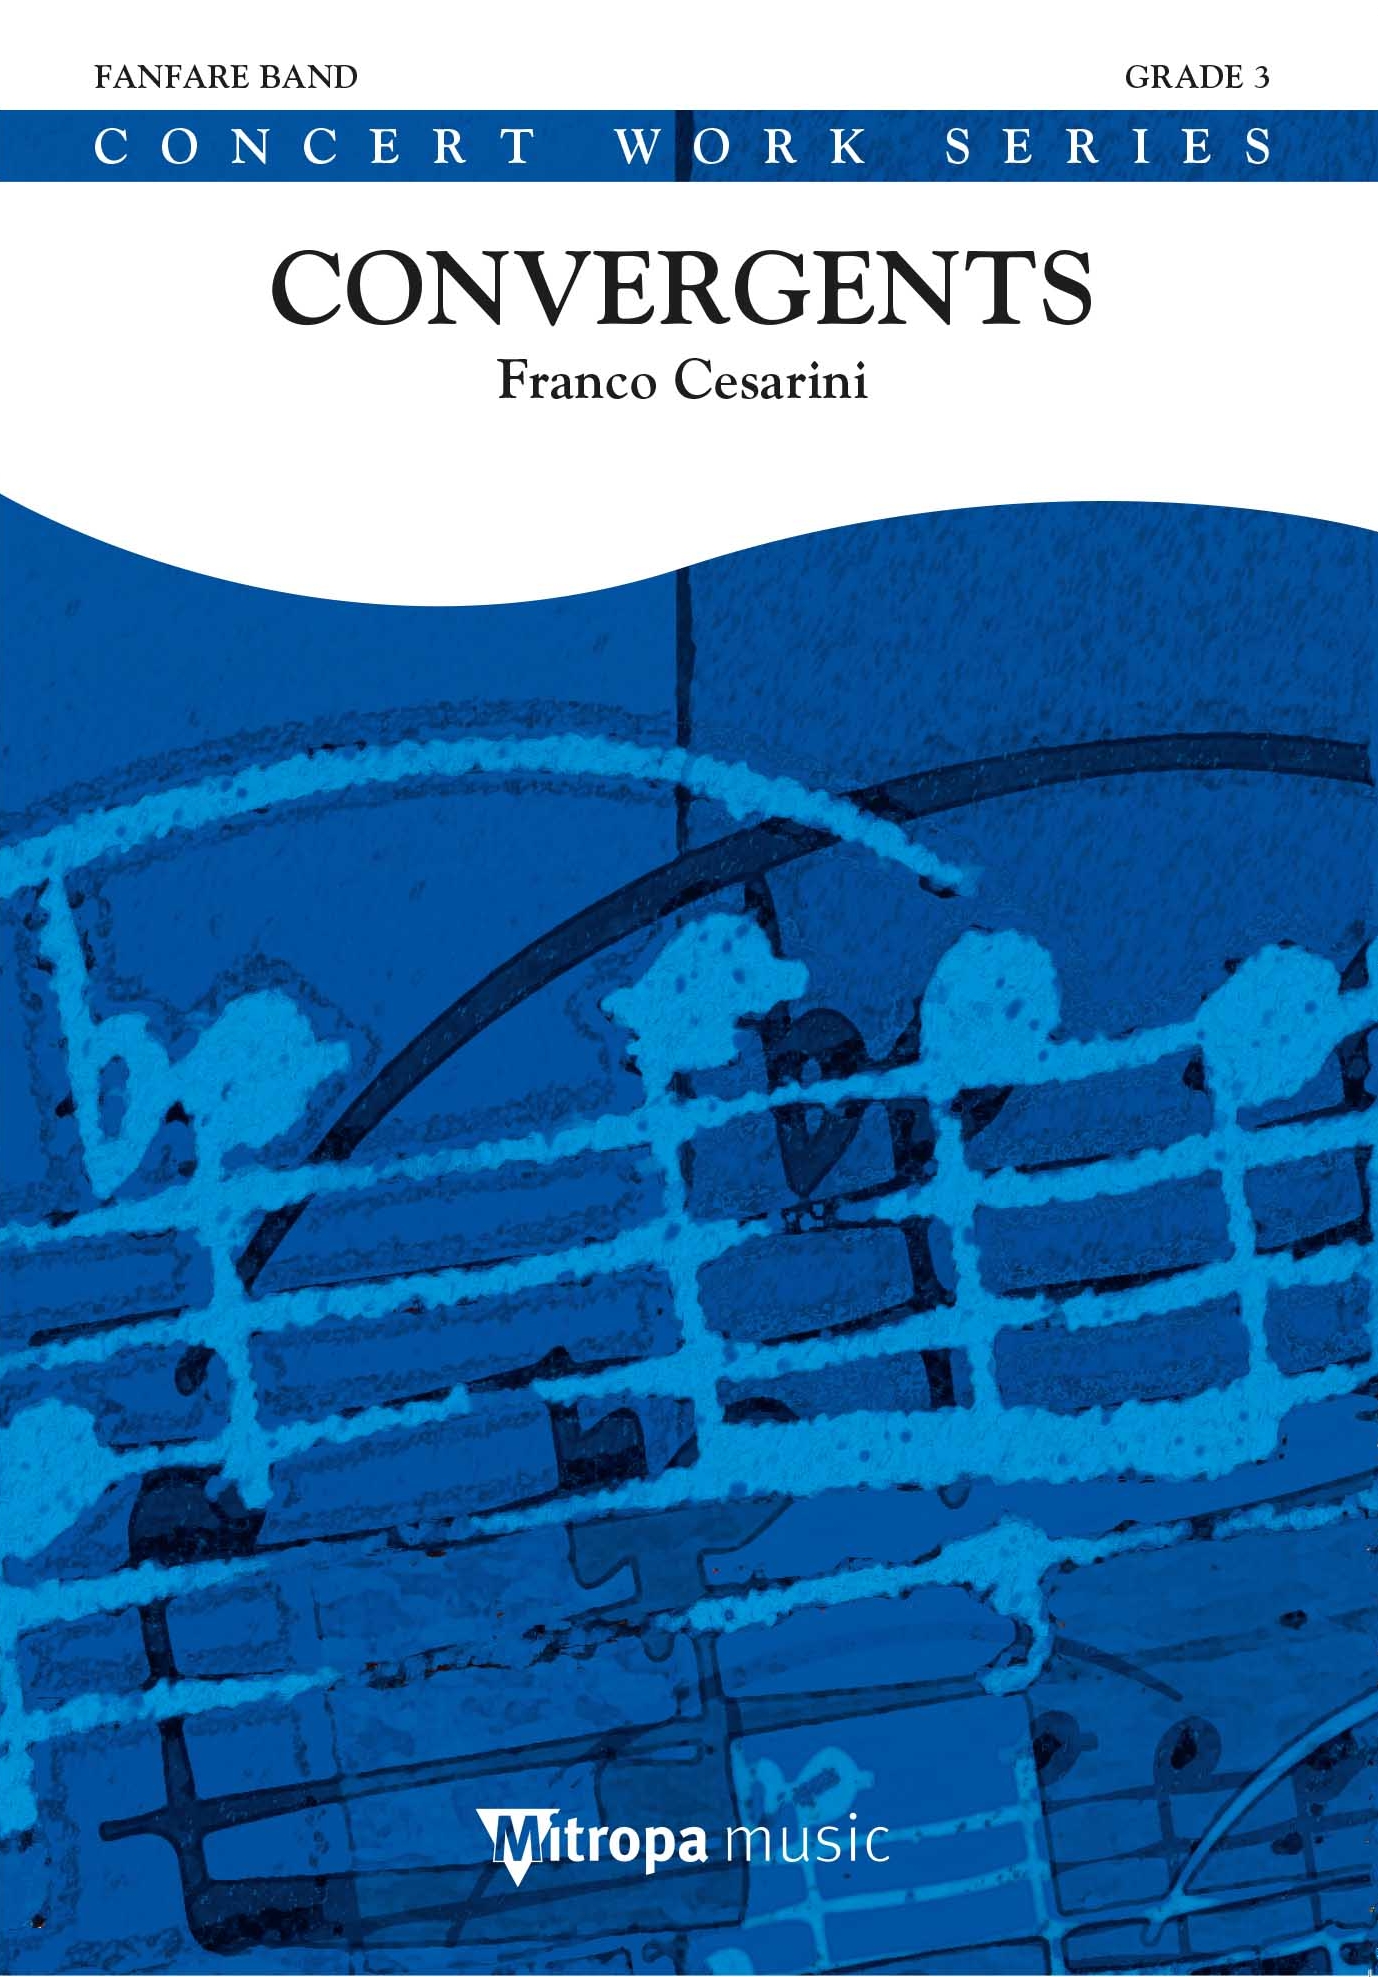 Franco Cesarini: Convergents: Fanfare Band: Score & Parts